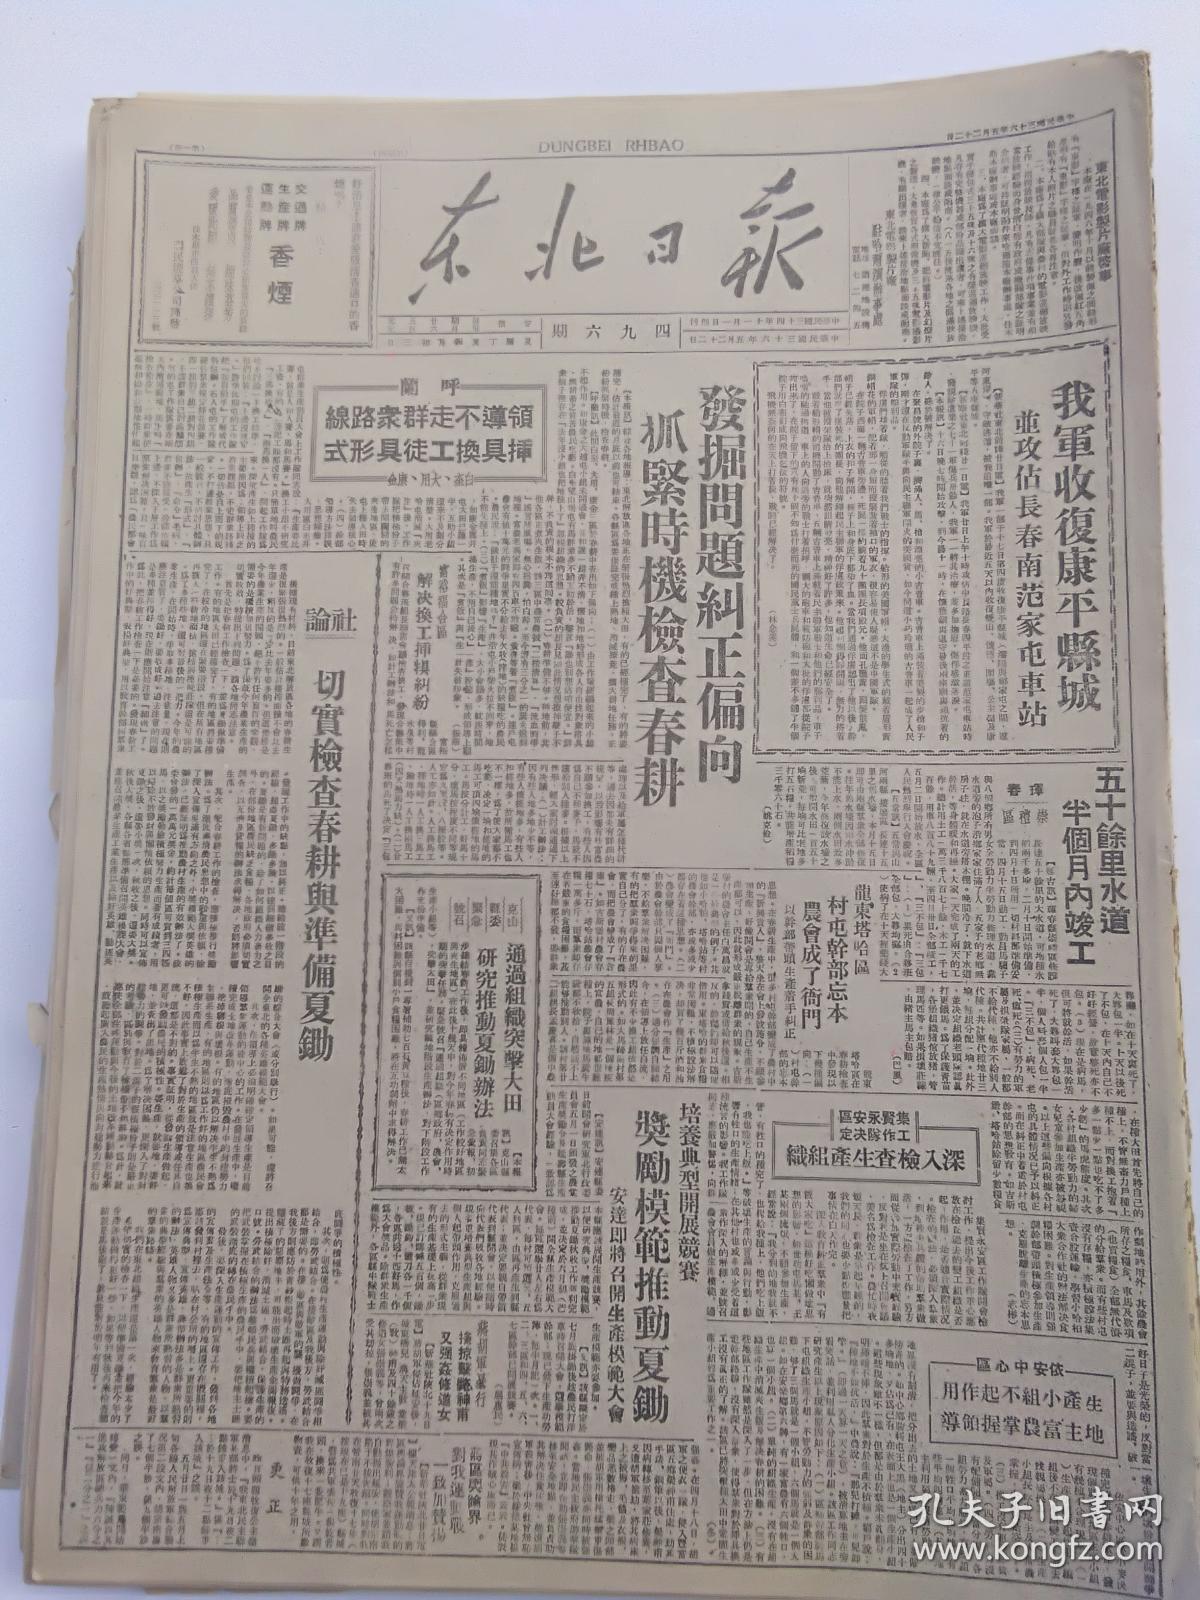 1947年5月22日《东北日报》我军收复康平县城，反内战、反饥饿京沪杭学生联合大示威，华君武漫画等等